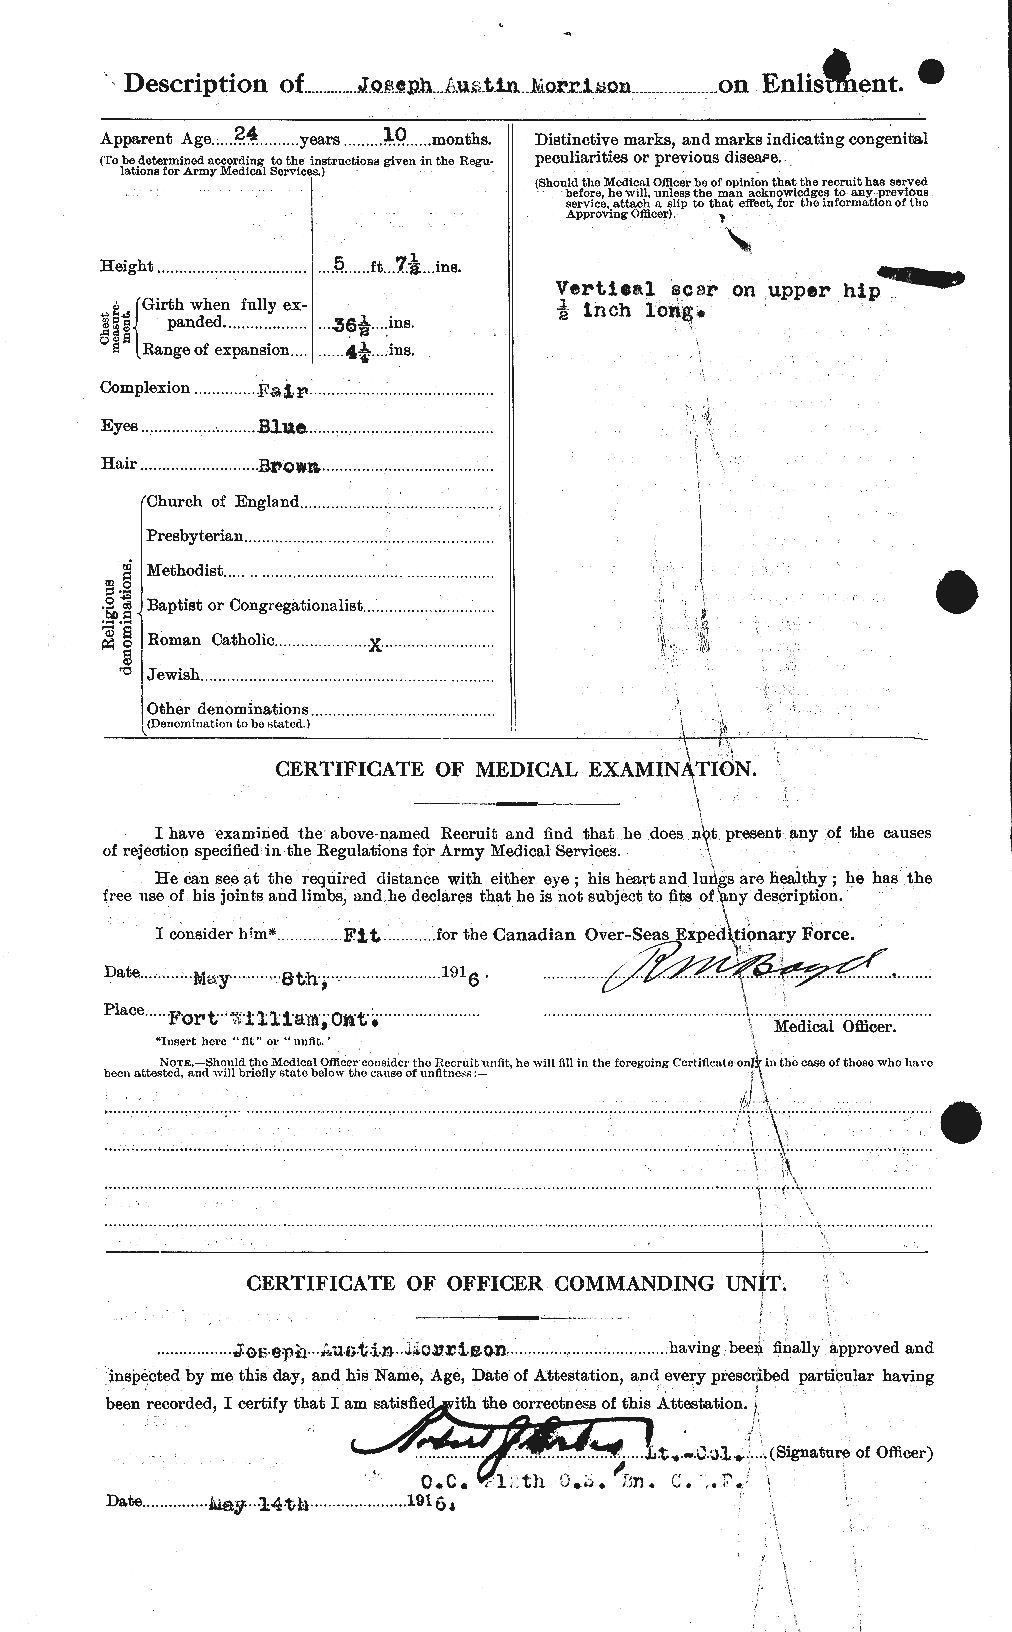 Dossiers du Personnel de la Première Guerre mondiale - CEC 507090b